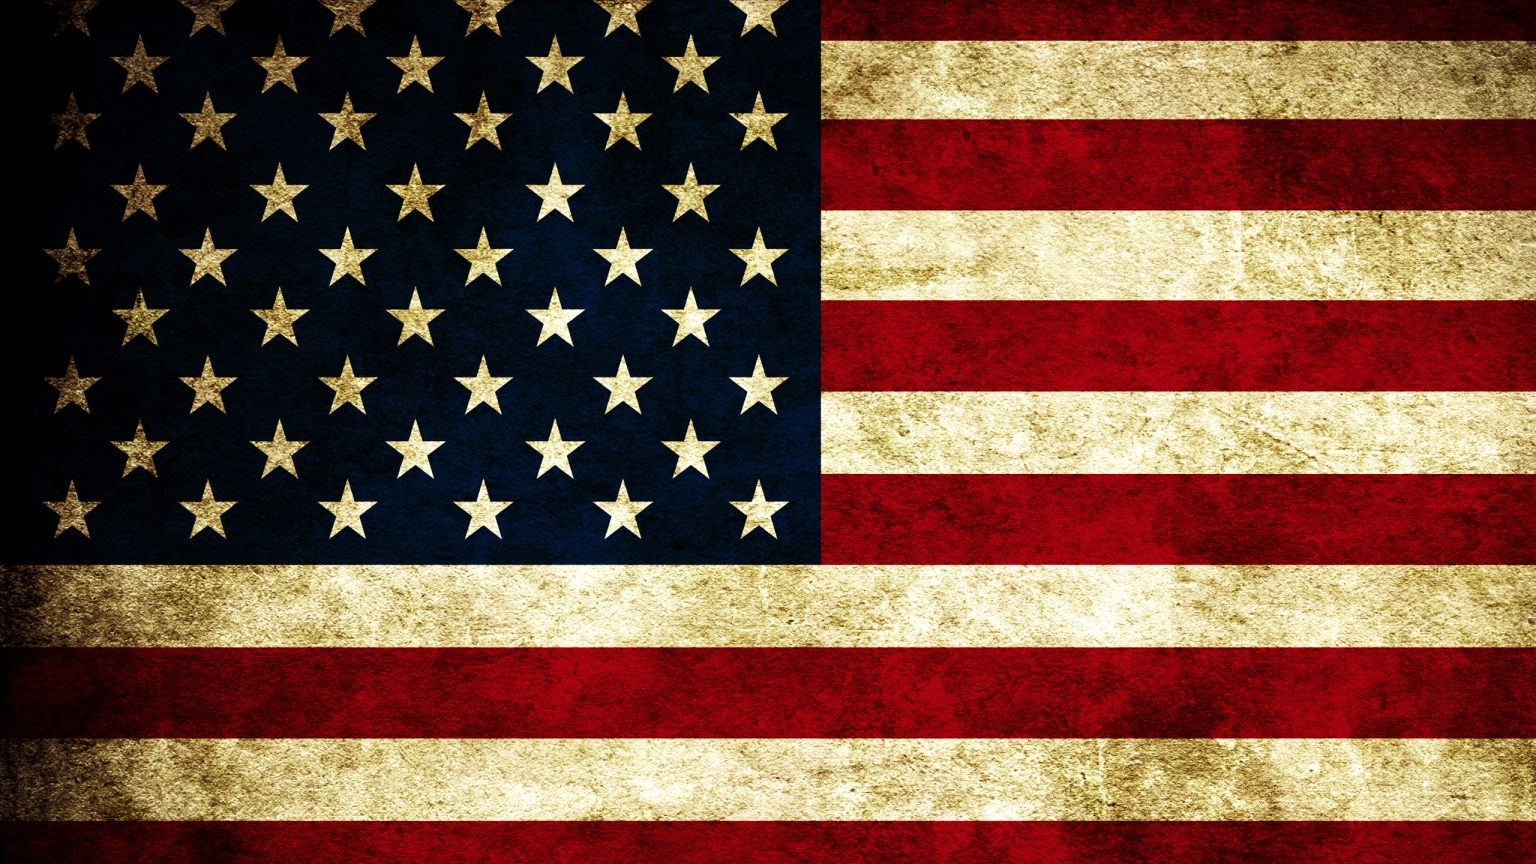 USA Grunge Flag for 1536 x 864 HDTV resolution